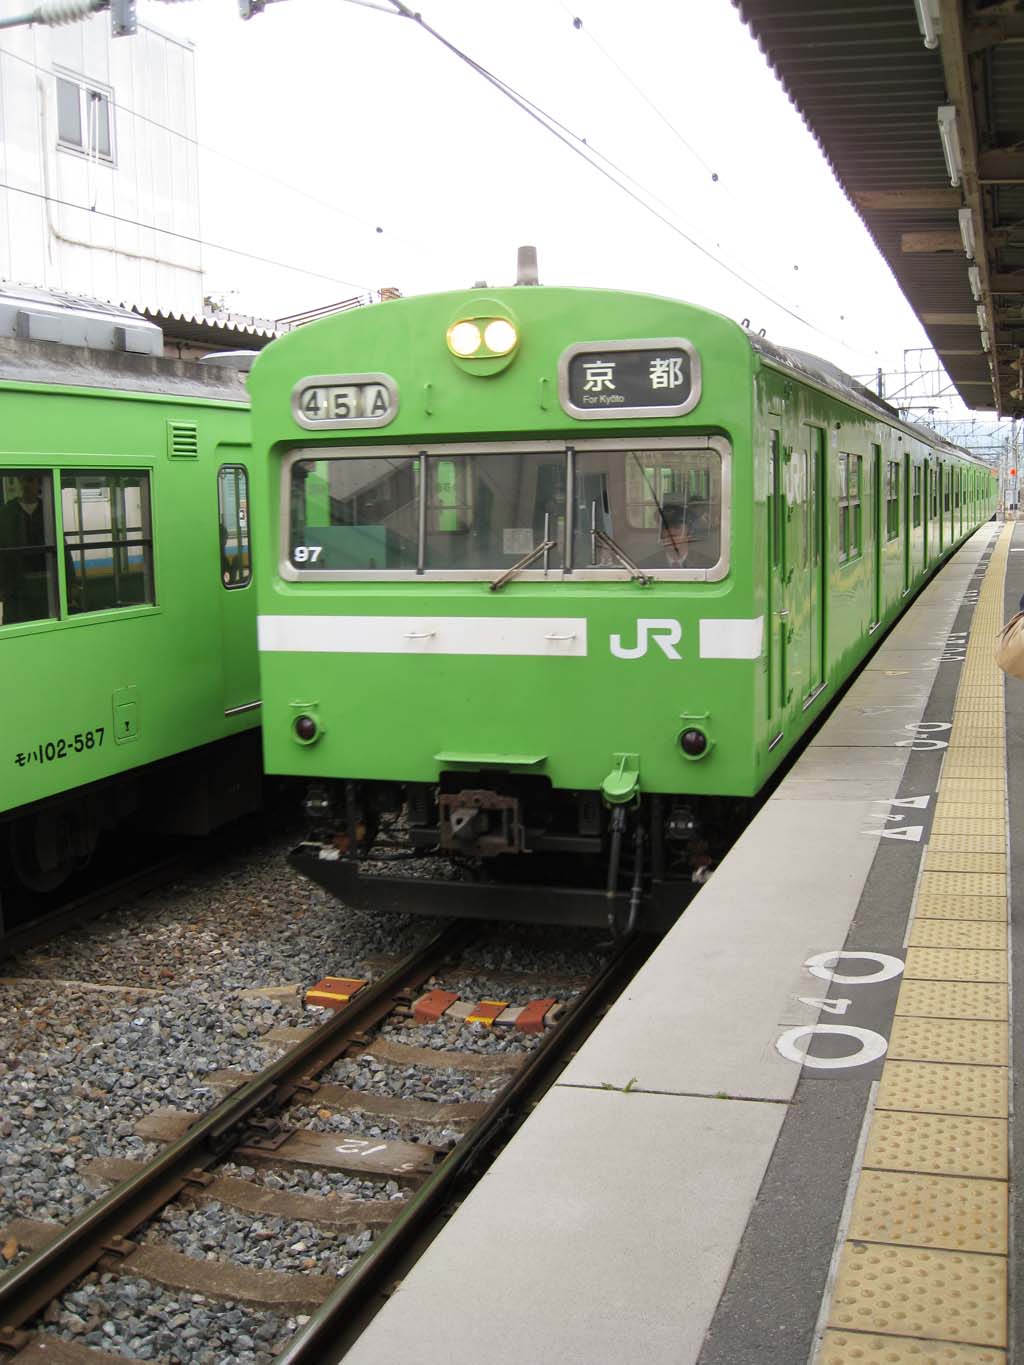 fotografia, material, livra, ajardine, imagine, proveja fotografia,JR Nara linha, plataforma, trem, Green, via frrea